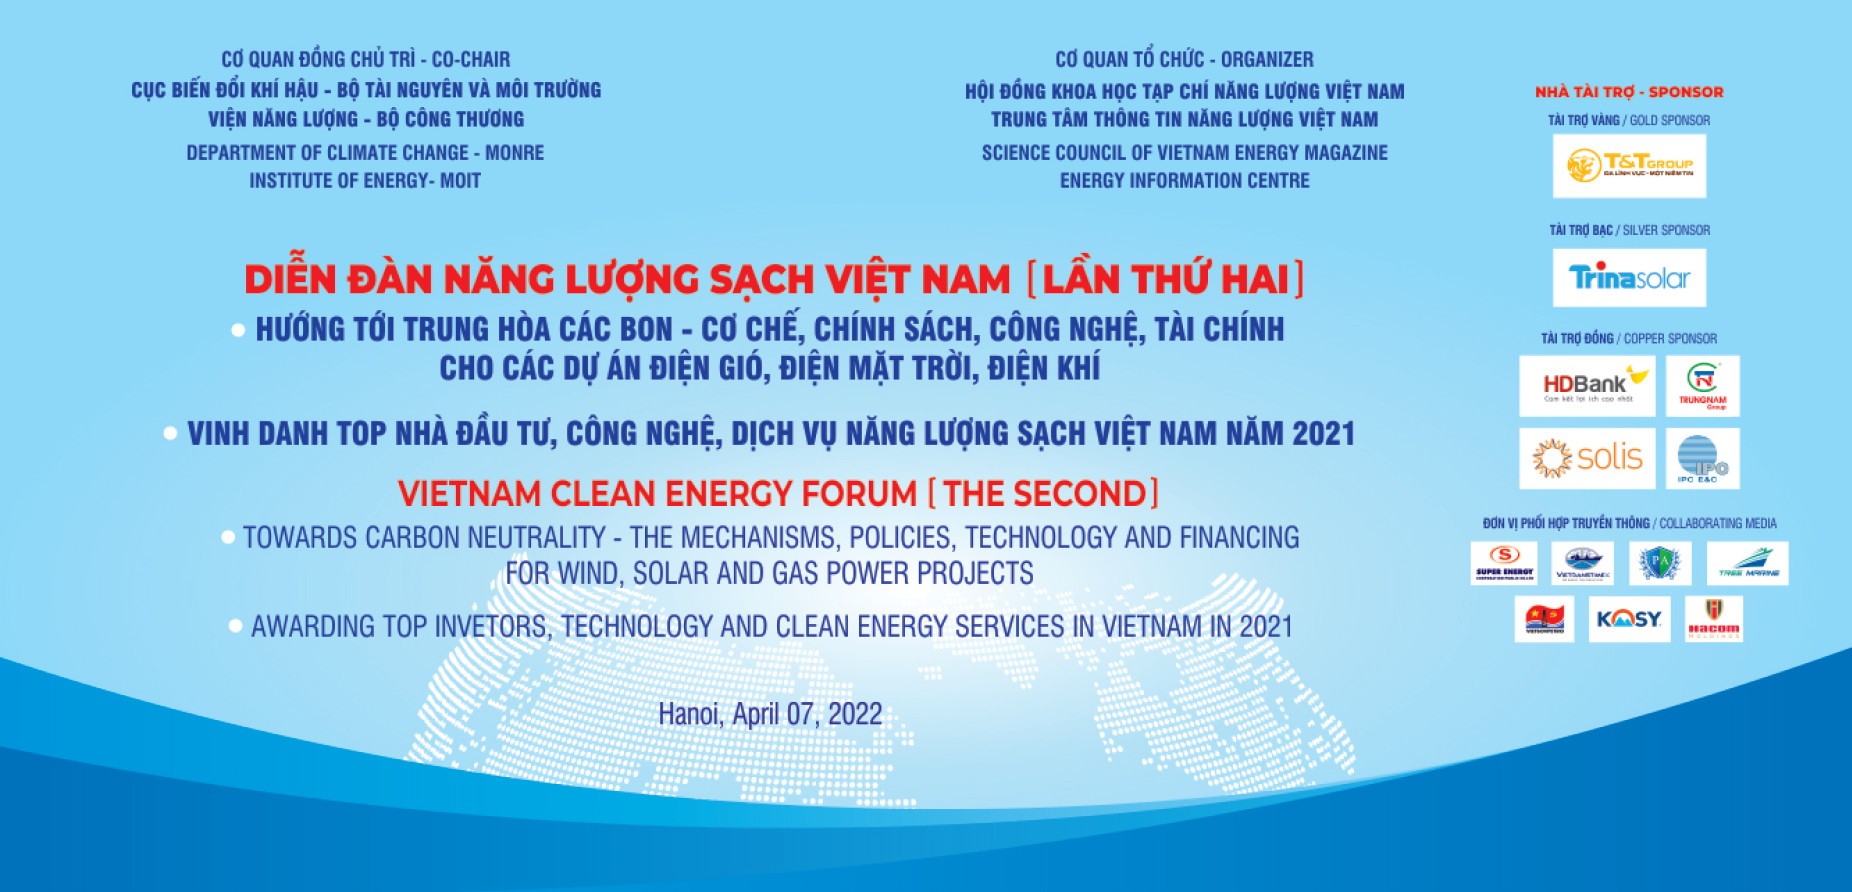 Sự kiện sắp tới - Diễn đàn Năng lượng sạch Việt Nam (lần thứ Hai)